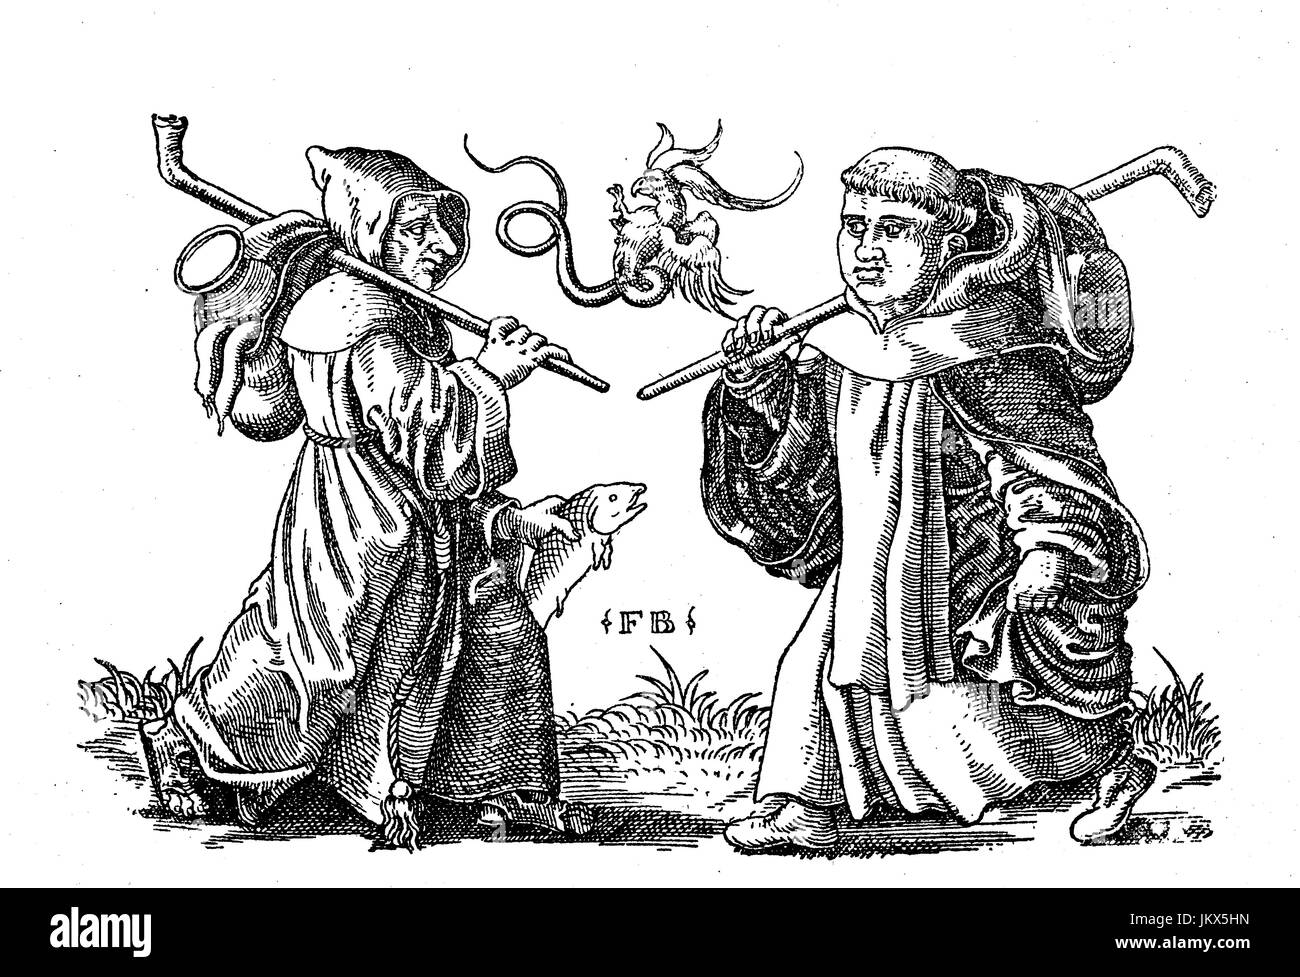 Amélioré : numérique, deux moines mendier, gravure sur cuivre par Franz Brun autour de 1560, publication de l'année 1882 Banque D'Images